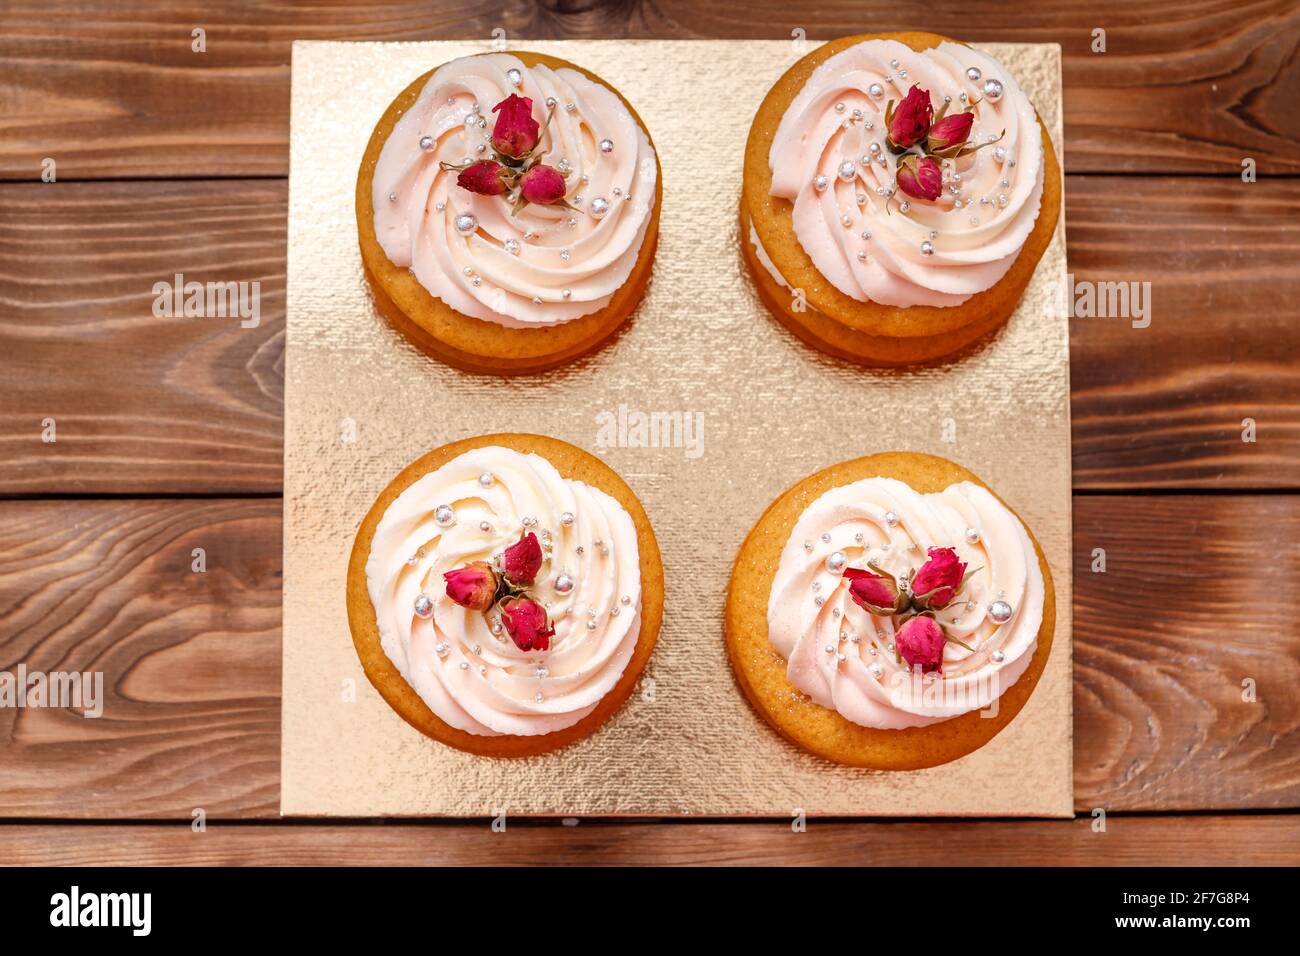 Gâteau éponge à la crème, décoré de petites fleurs. Le concept d'une friandise festive. Banque D'Images